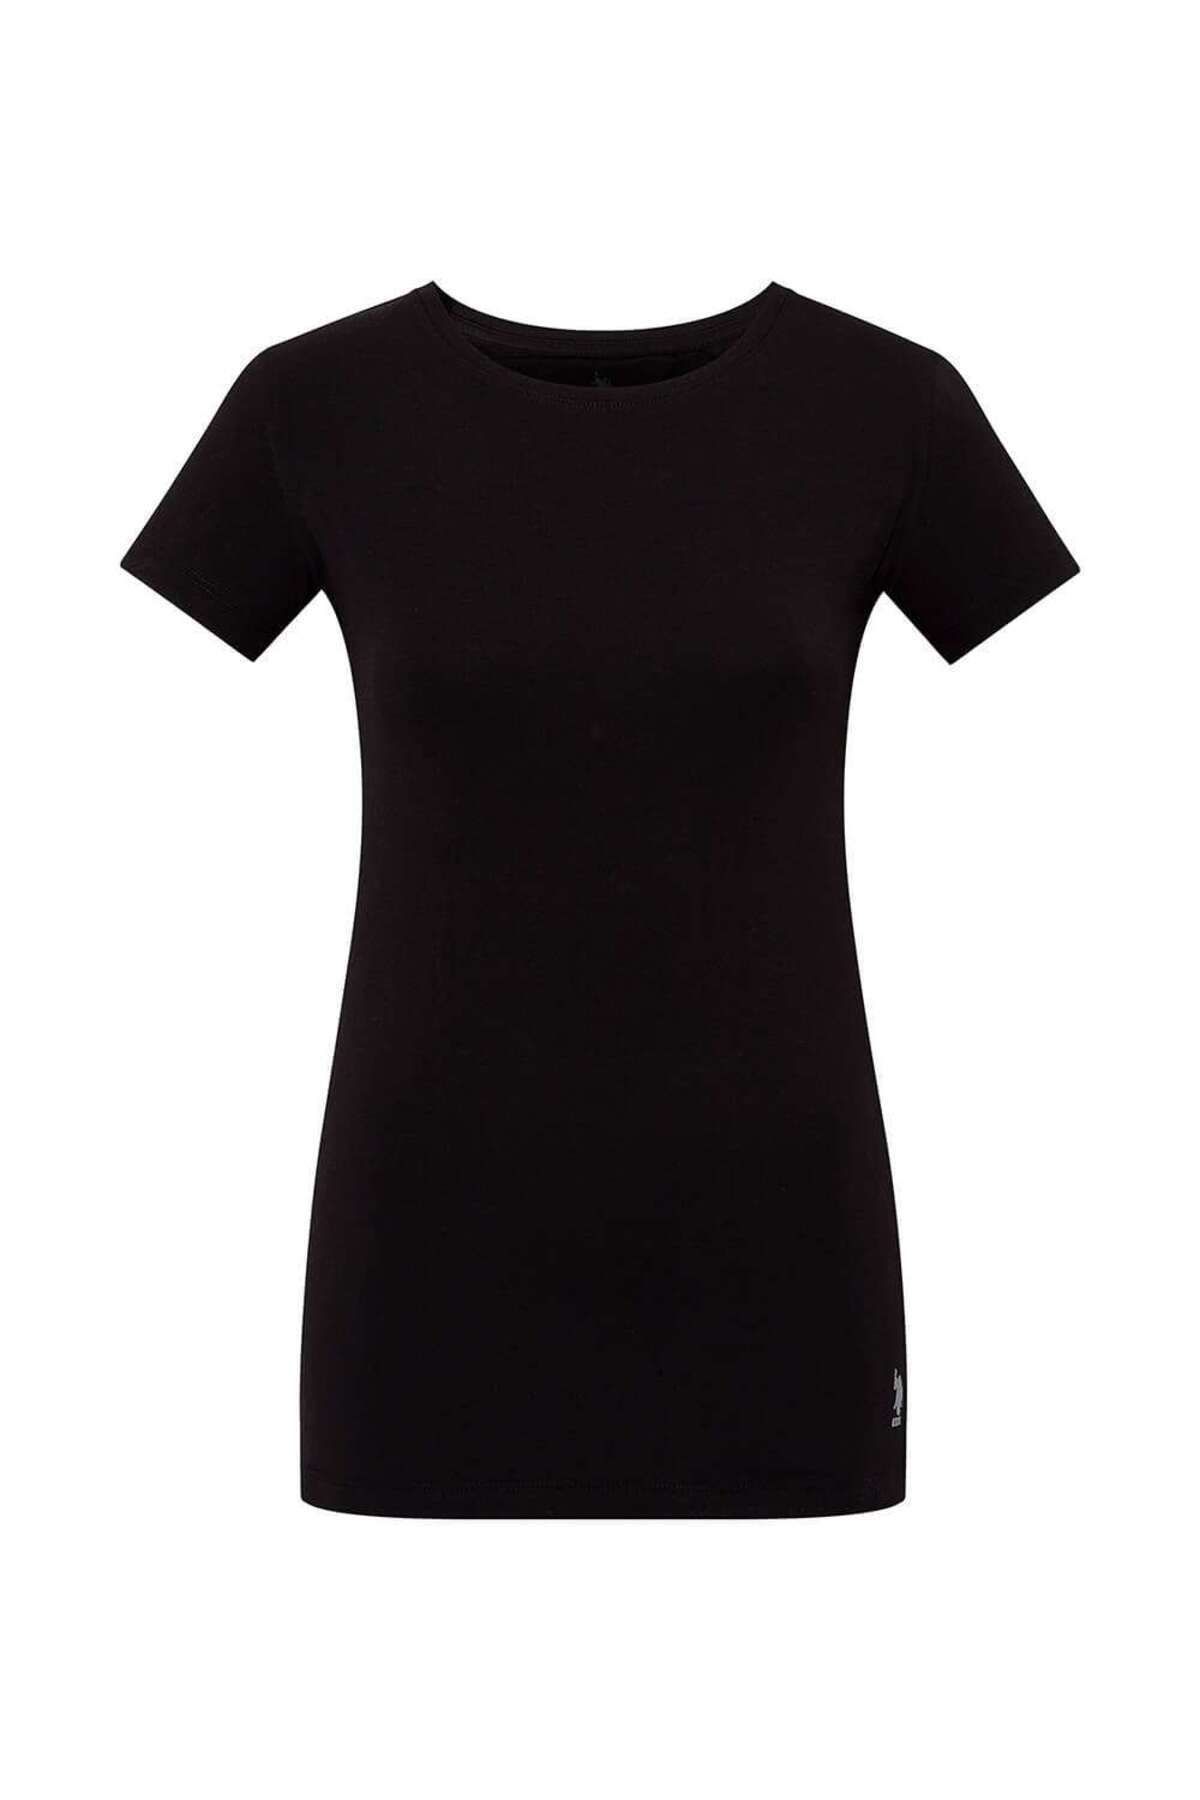 U.S. Polo Assn. Kadın Pamuklu İnce Siyah Yuvarlak Yaka T-shirt